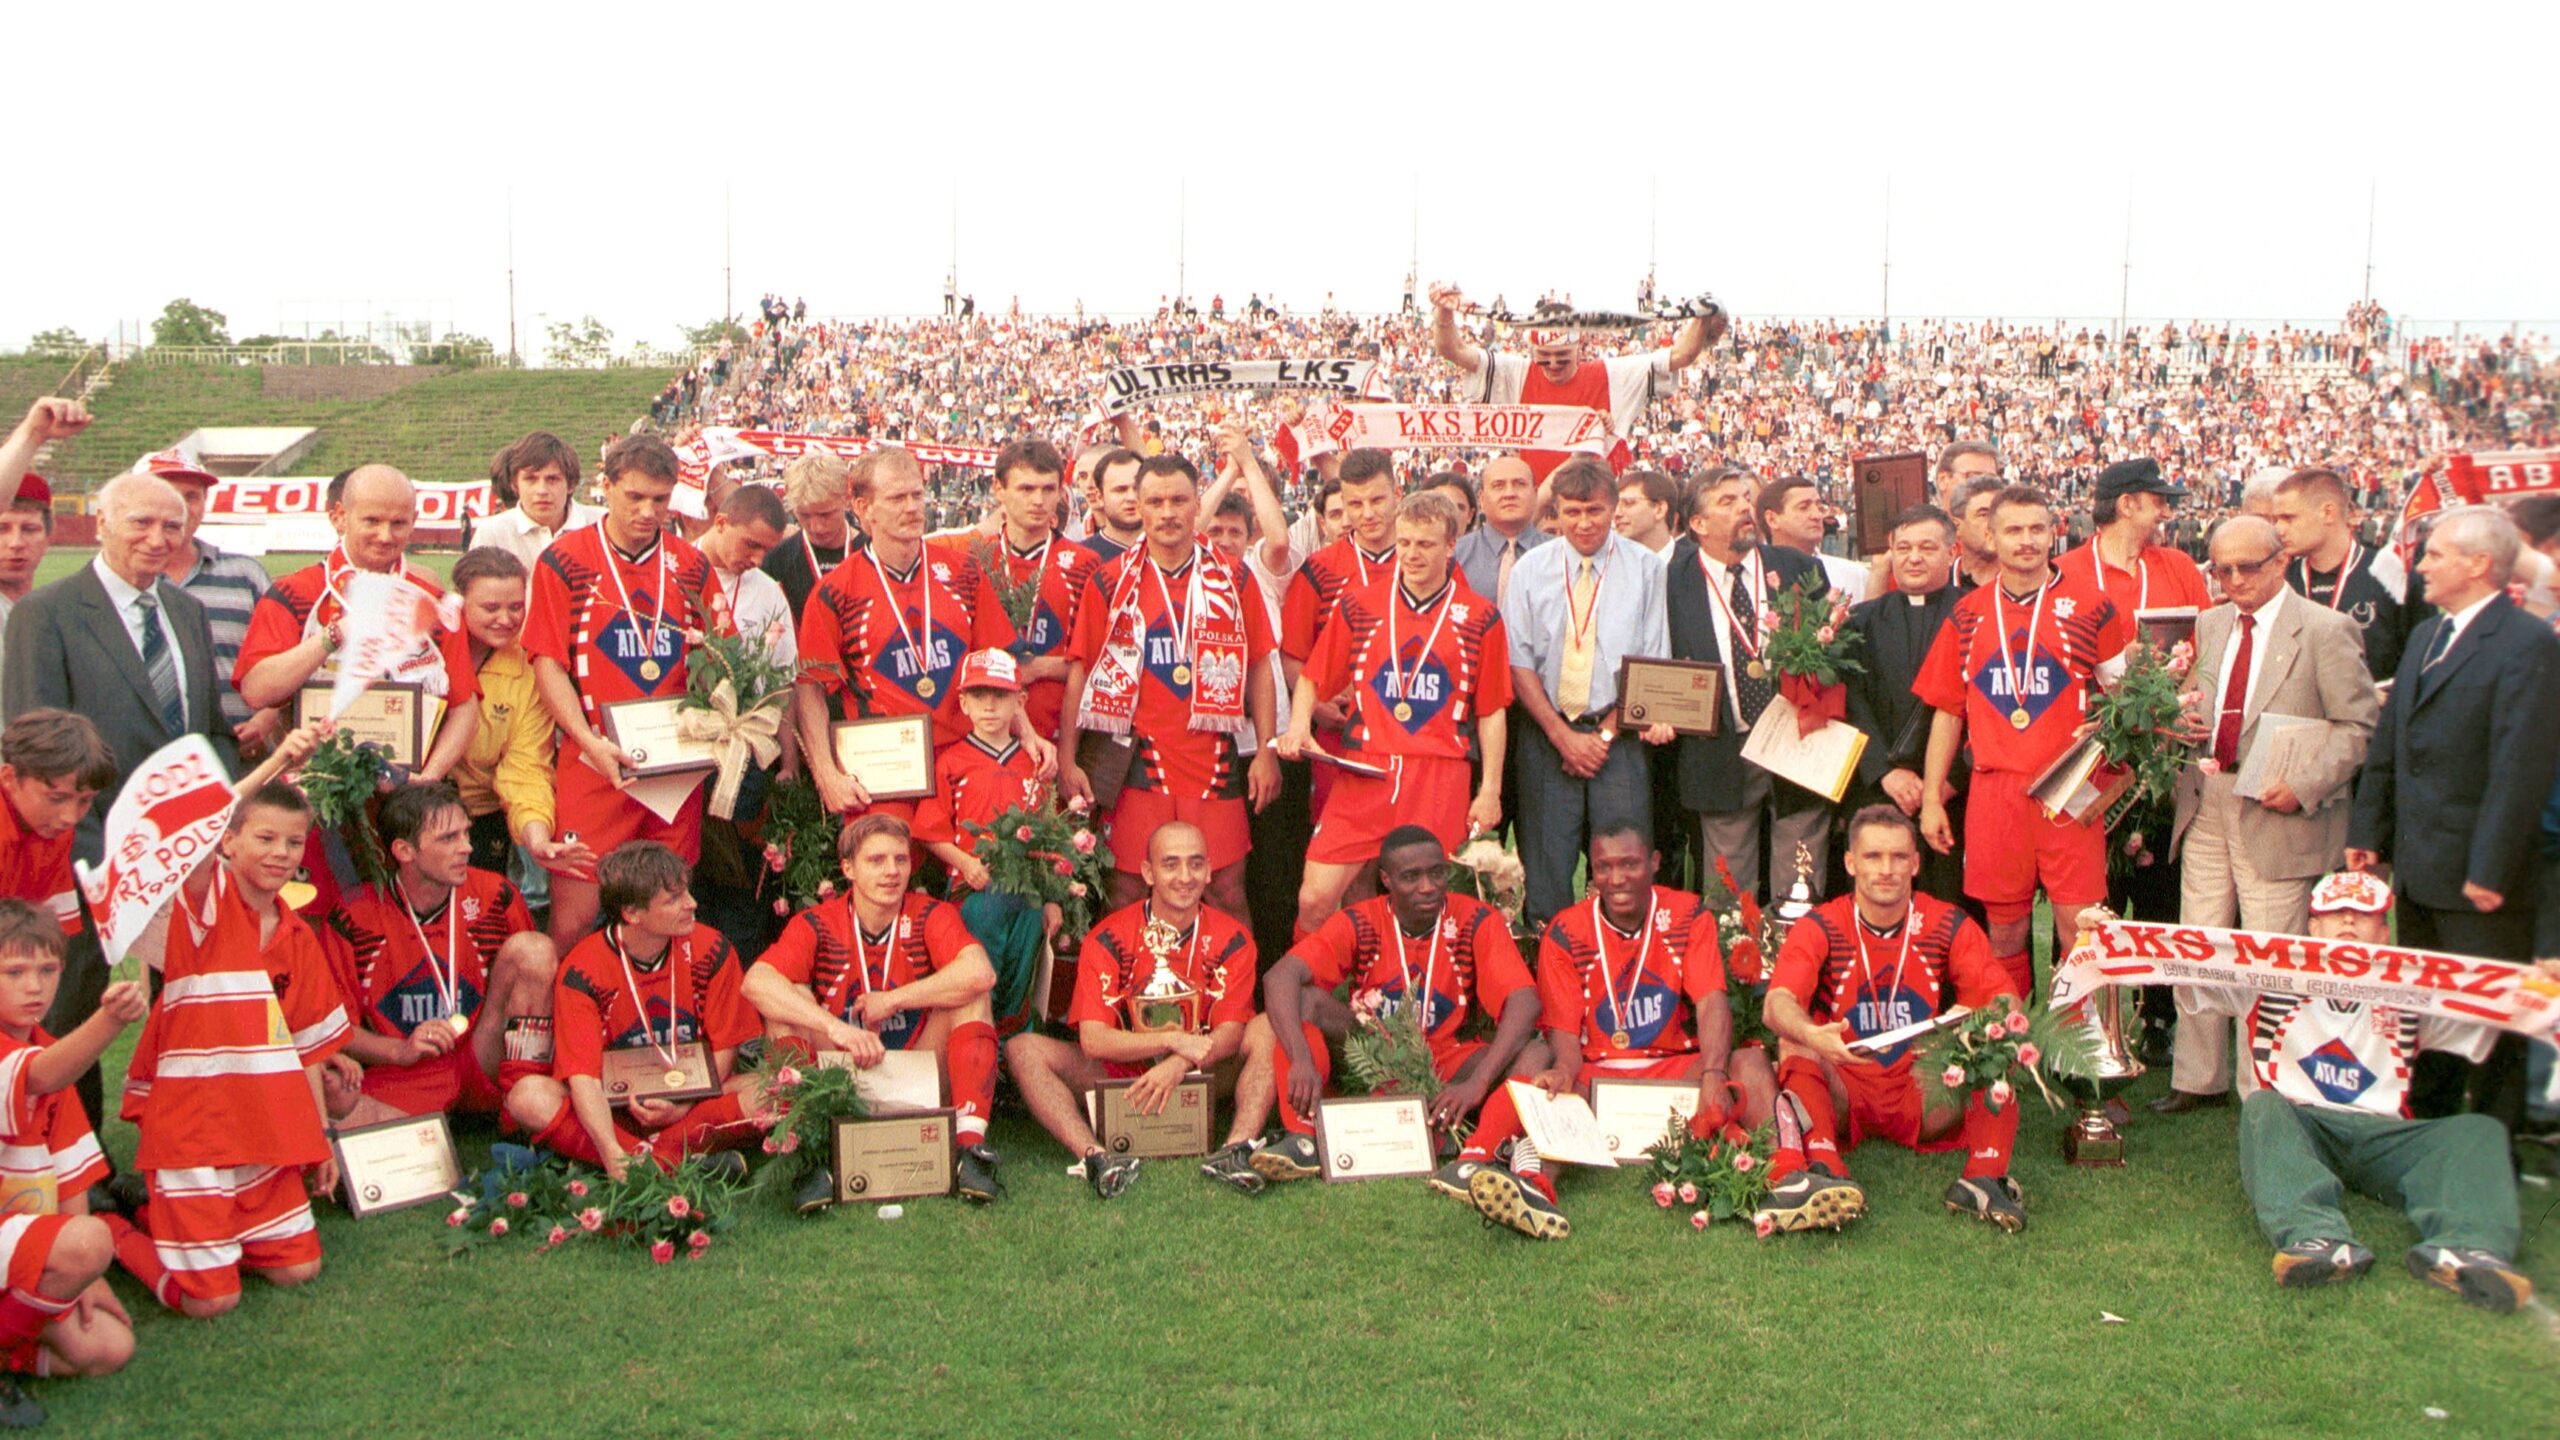 Mistrz, mistrz ŁKS! 1997/1998 kolejka po kolejce